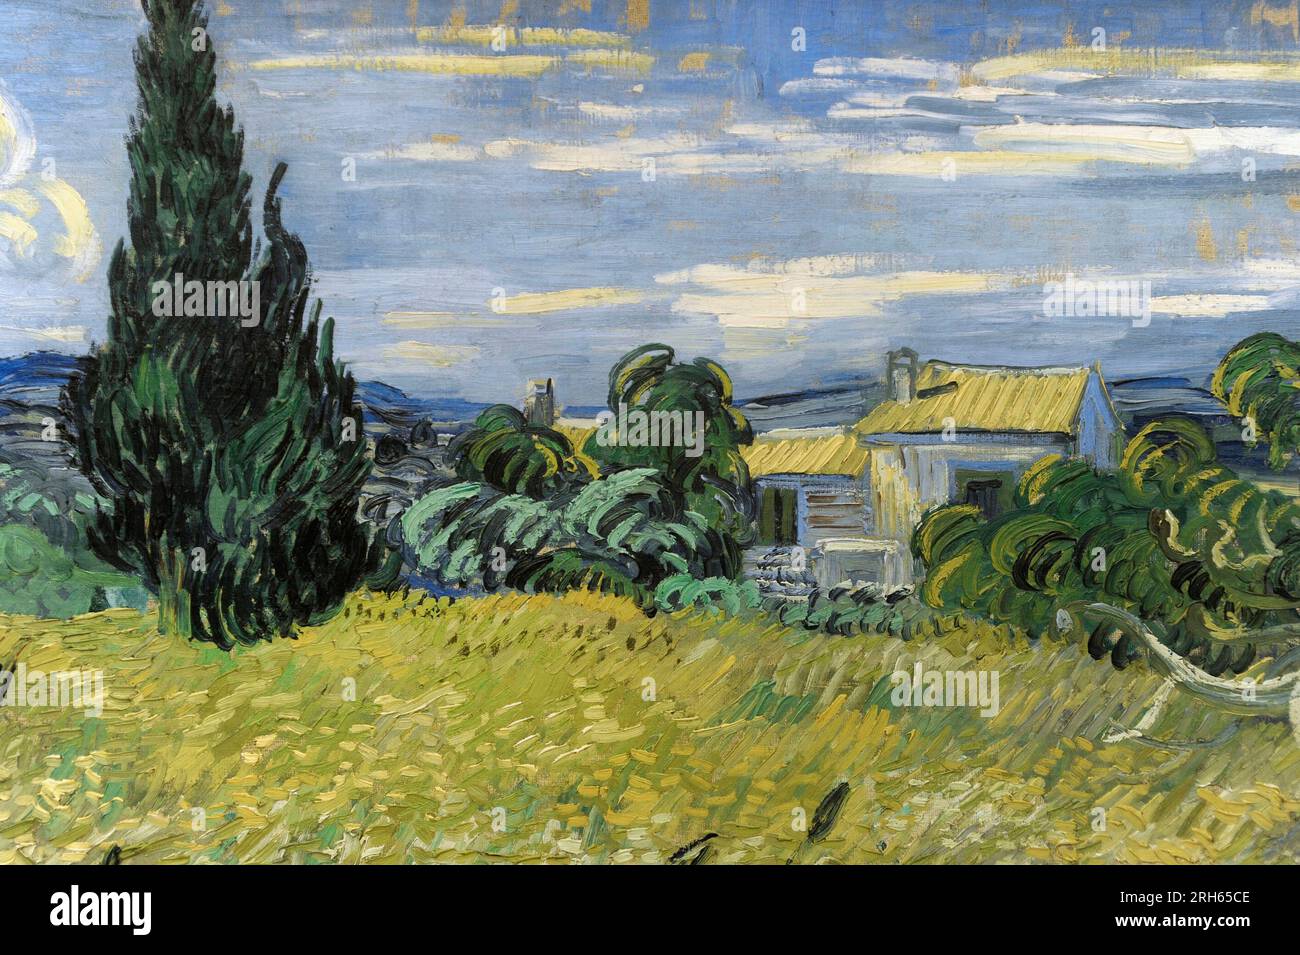 Vincent Van Gogh (1853-1890) Peintre post-impressionniste néerlandais. Maïs vert, 1889. Détails. Galerie nationale, Prague, République tchèque. Banque D'Images